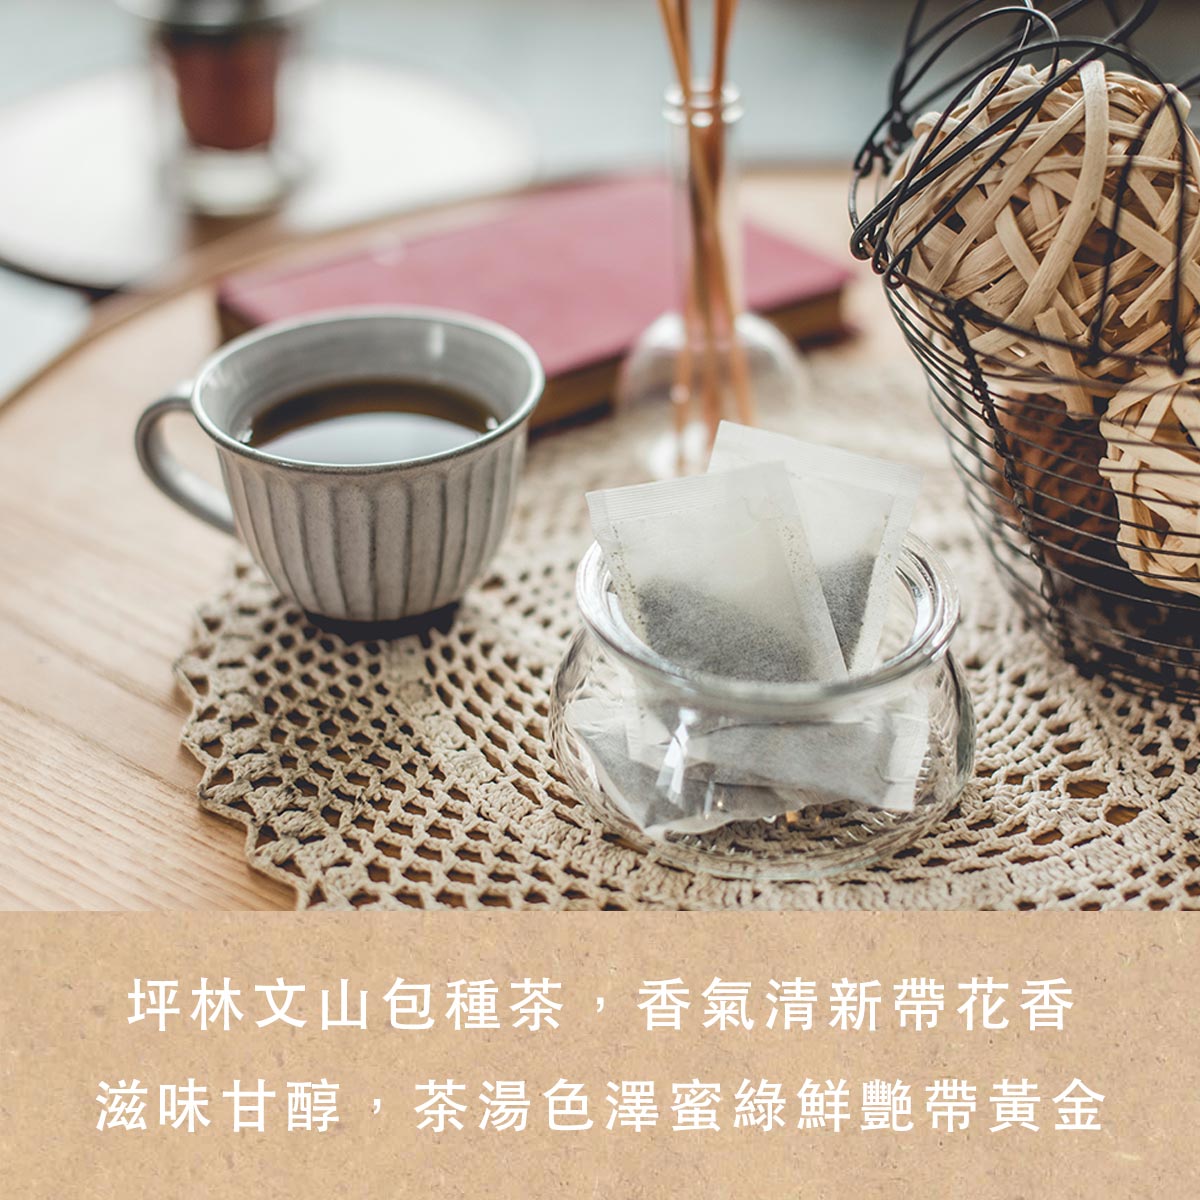 台北必買手信推薦台灣包種茶葉